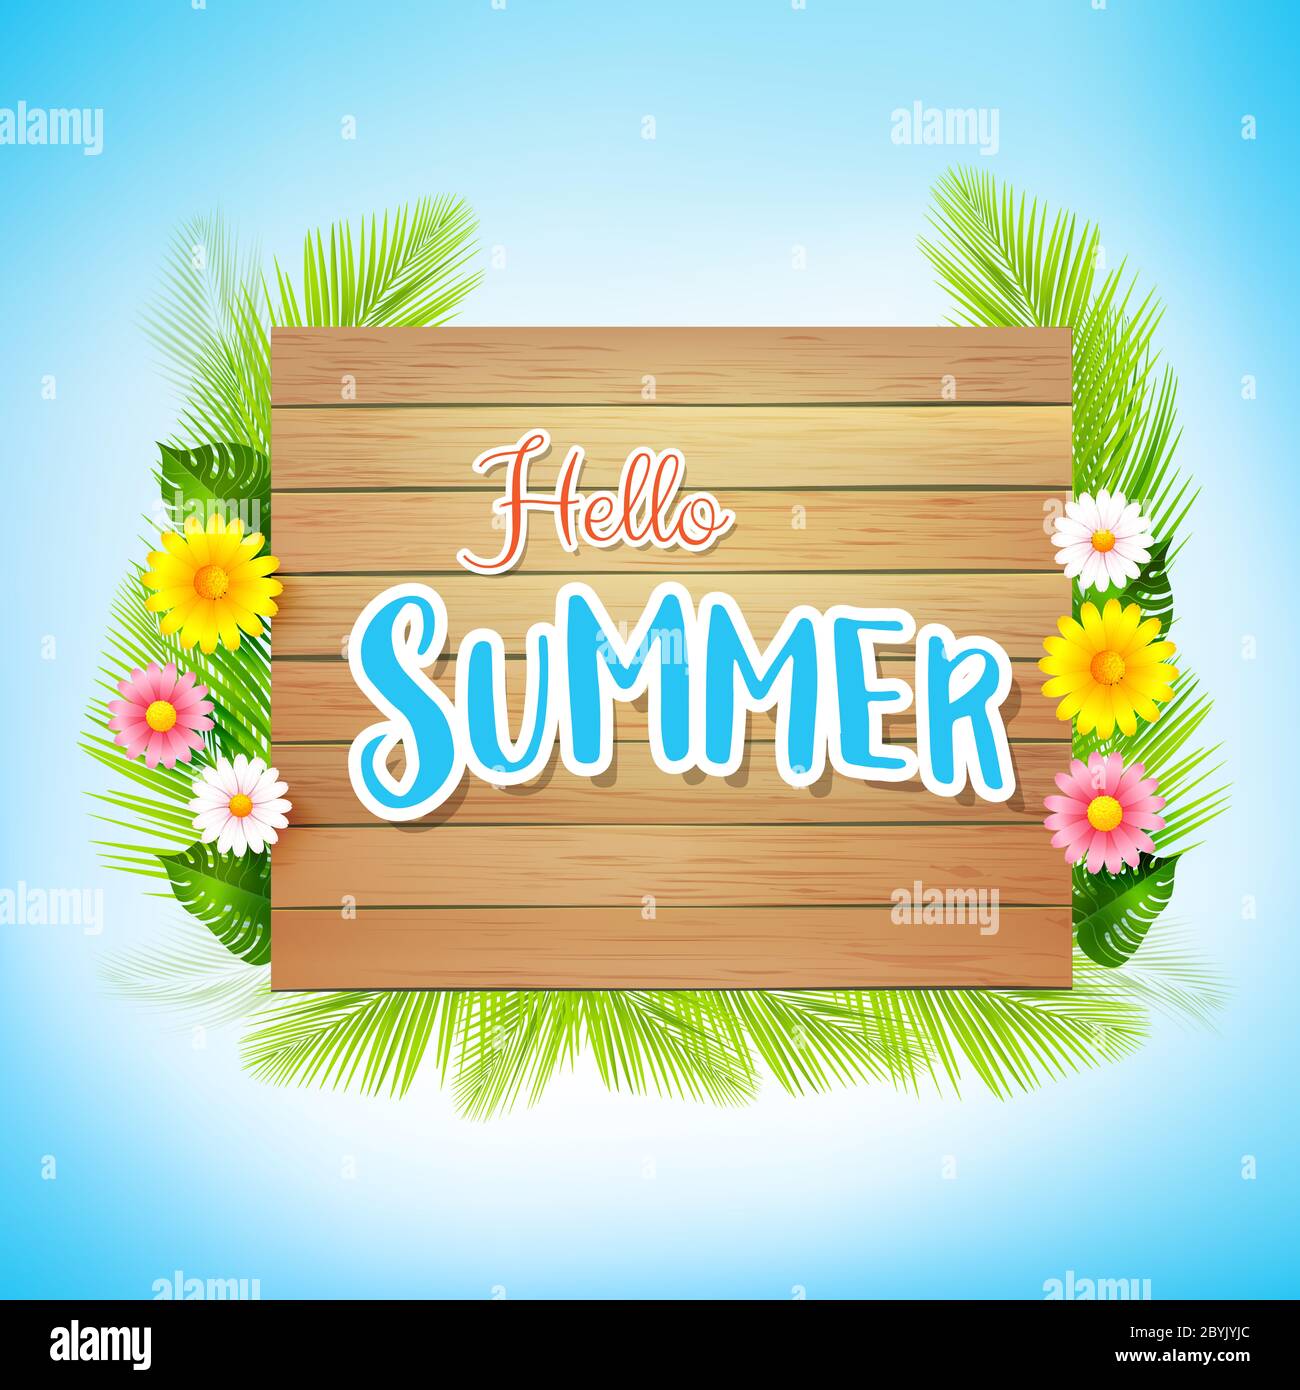 Hallo Sommer Text mit Holzhintergrund für Sommerurlaub Konzept, Sandstrand auf blauen Himmel Hintergrund, Vektor-Illustration Stockfoto